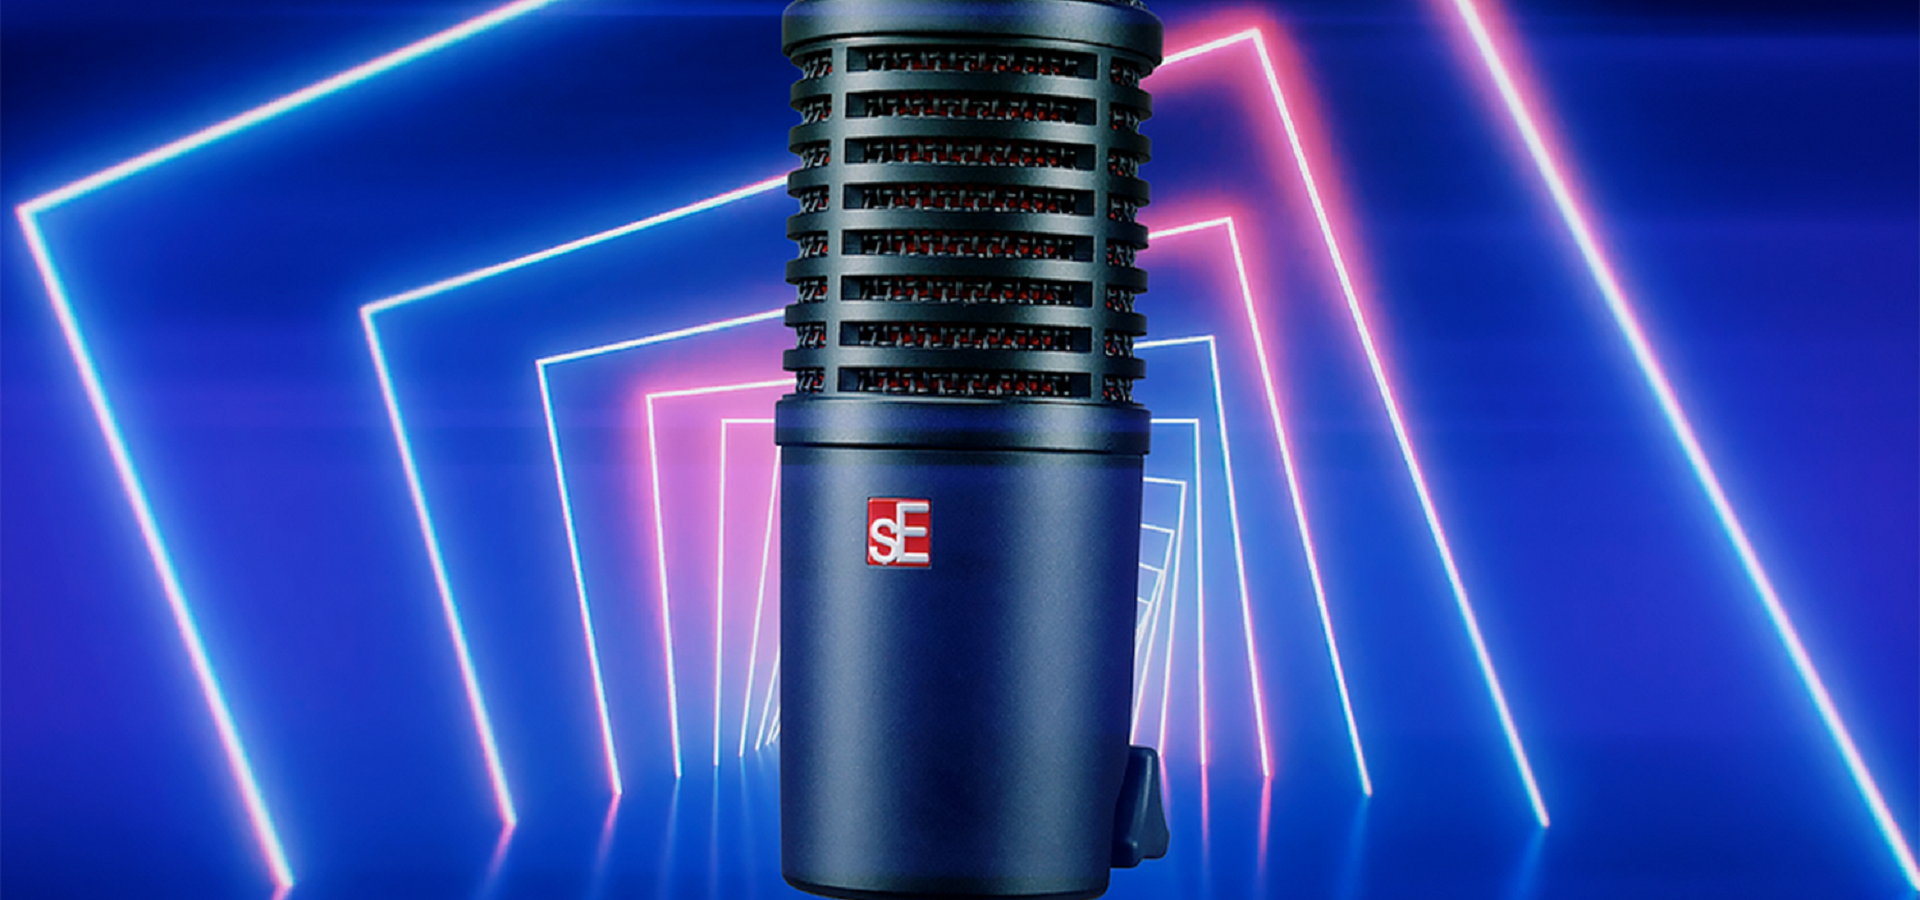 DynaCaster - mikrofon dla podcasterów